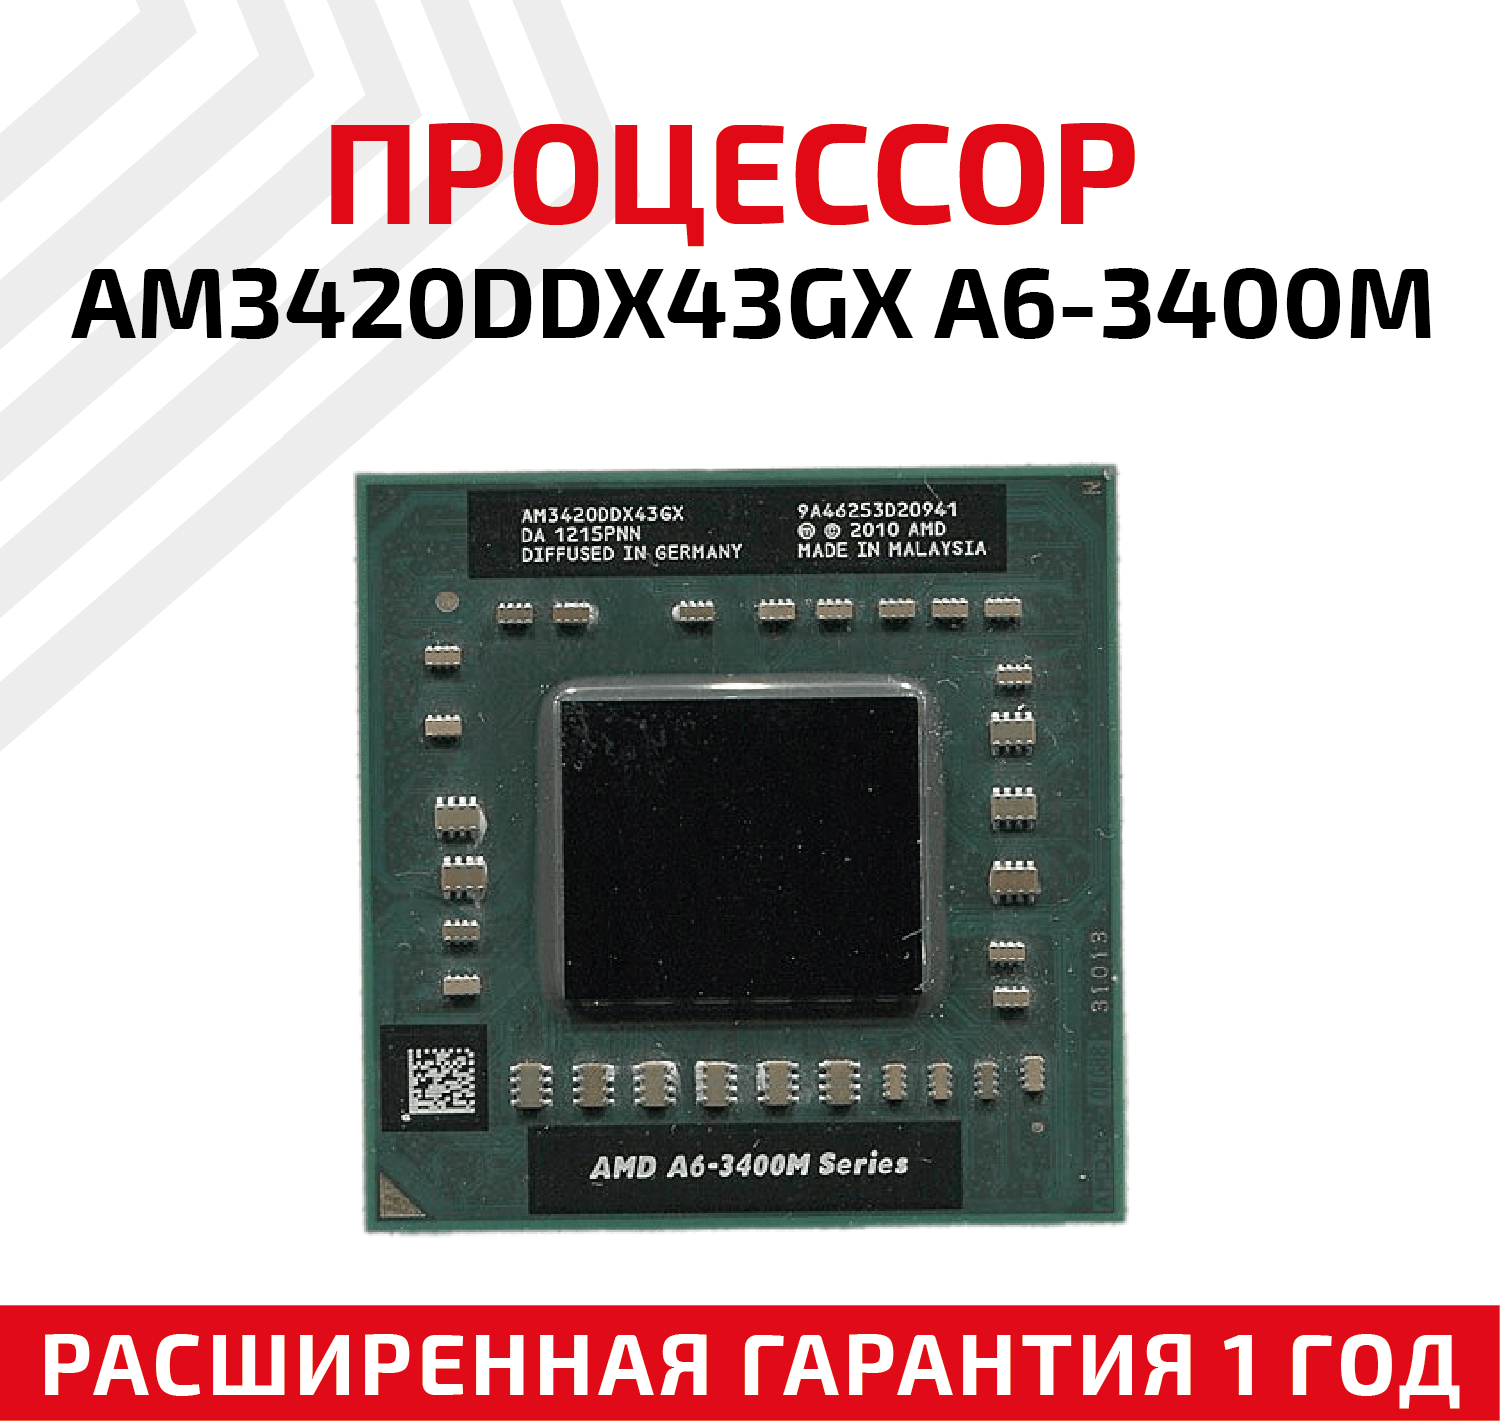 Процессор AMD AM3420DDX43GX A6-3400M 23 ГГц для ноутбука